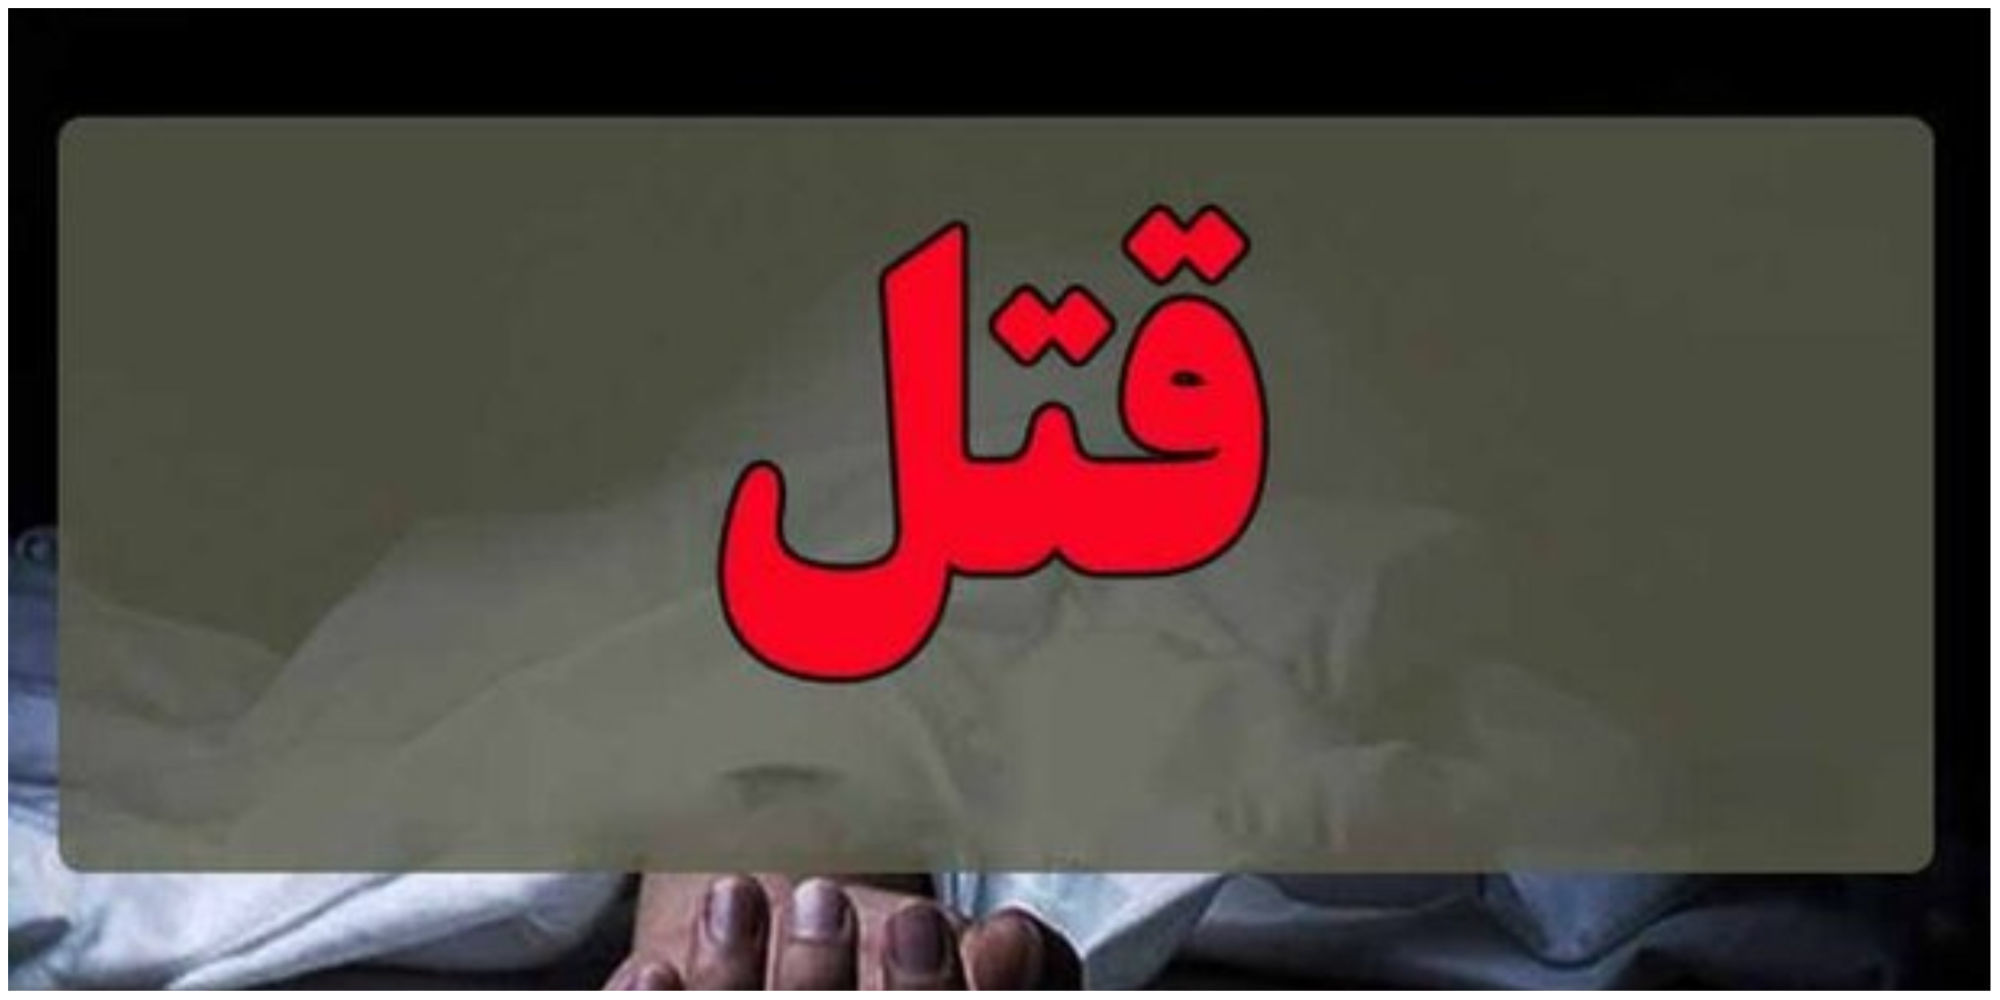 بلاگر معروف دست به قتل زد